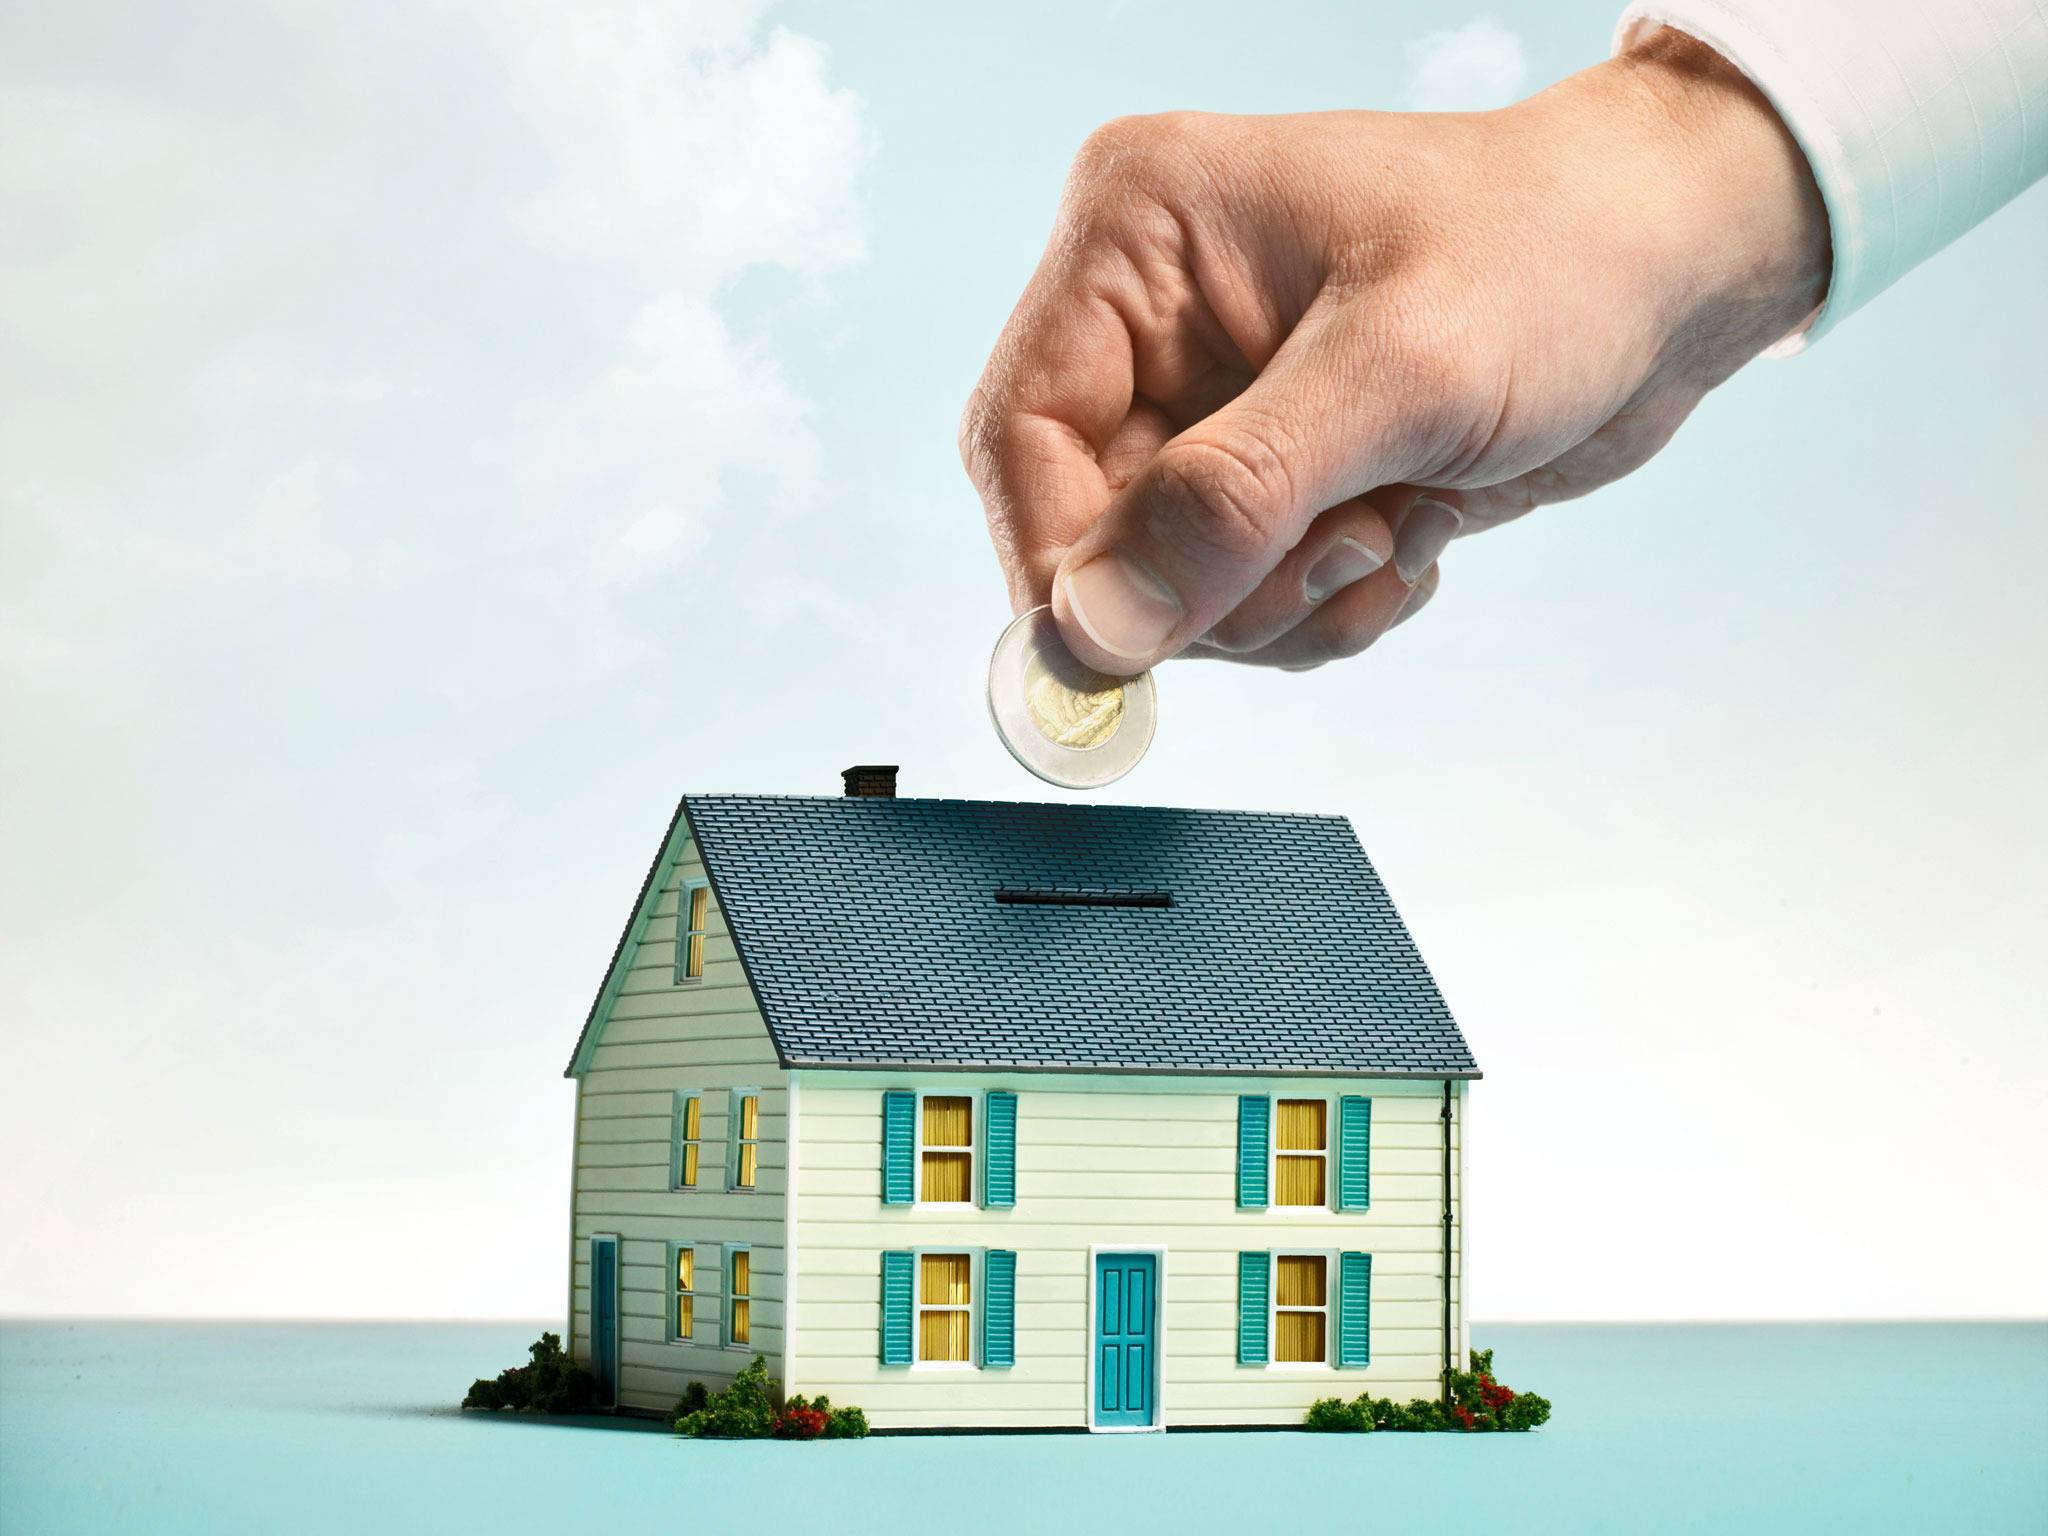 Инвестиции в жилую недвижимость: почему в 2021 году лучше поискать альтернативу